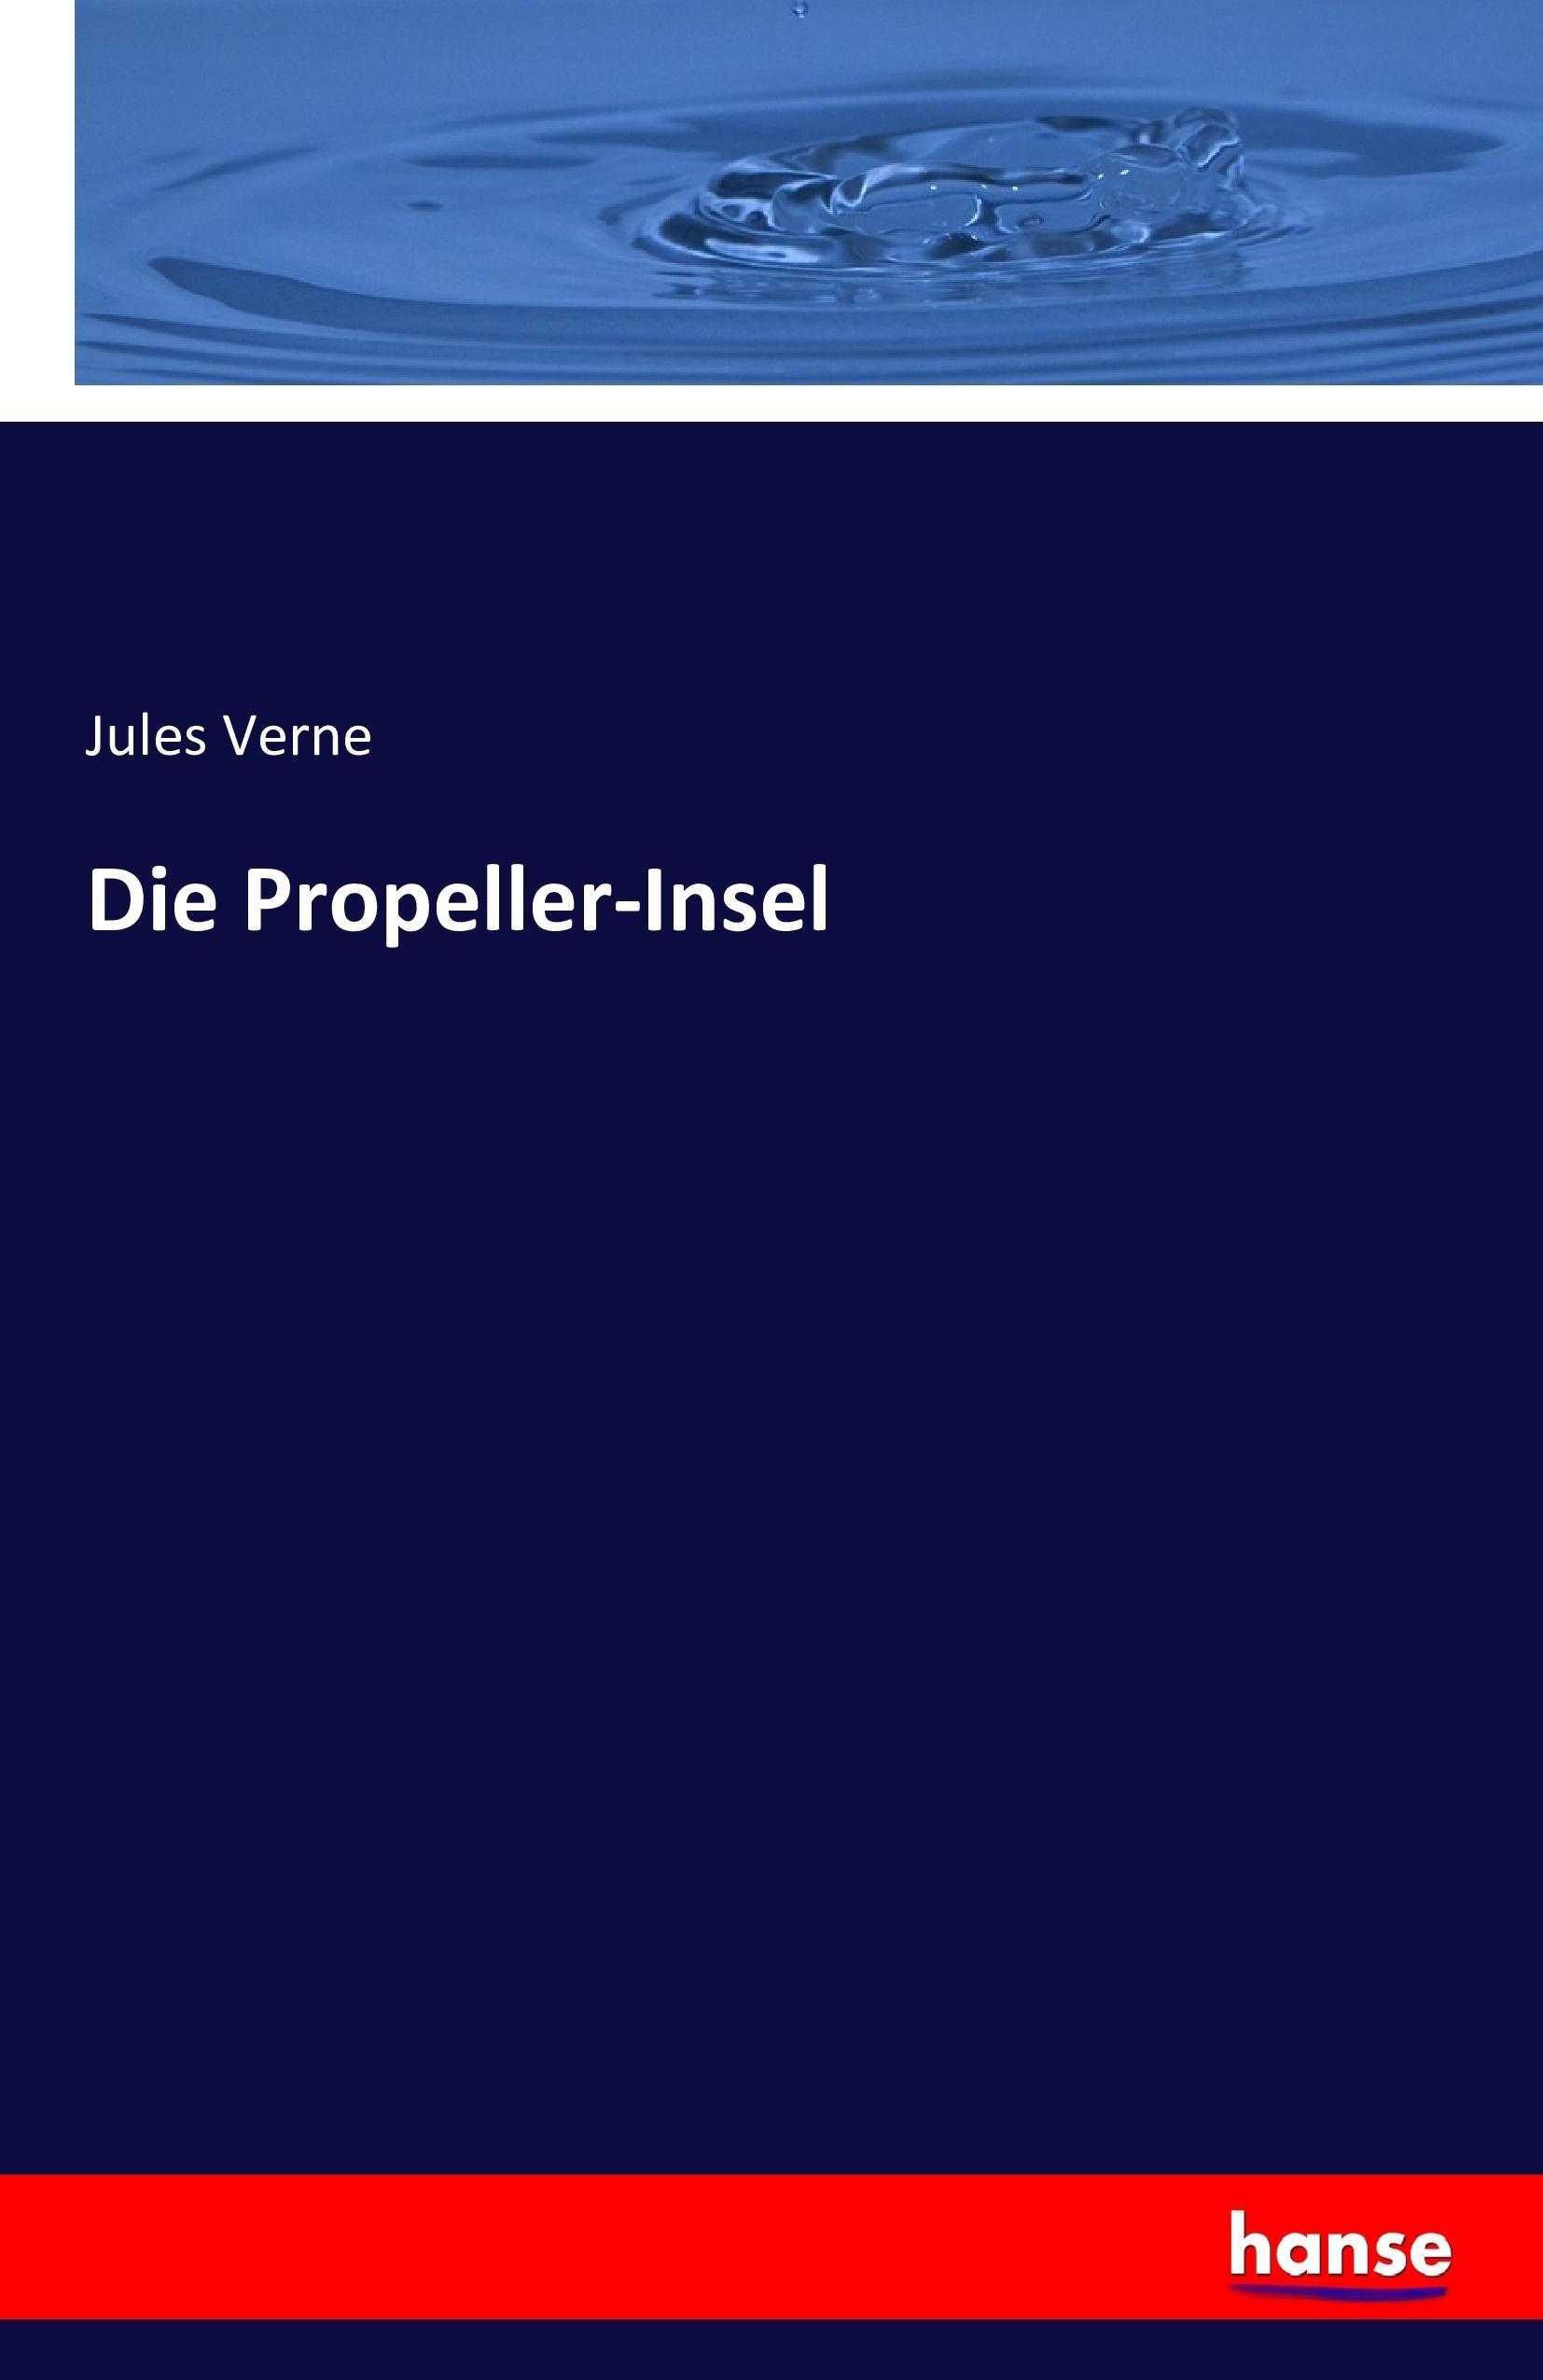 Die Propeller-Insel - Verne, Jules